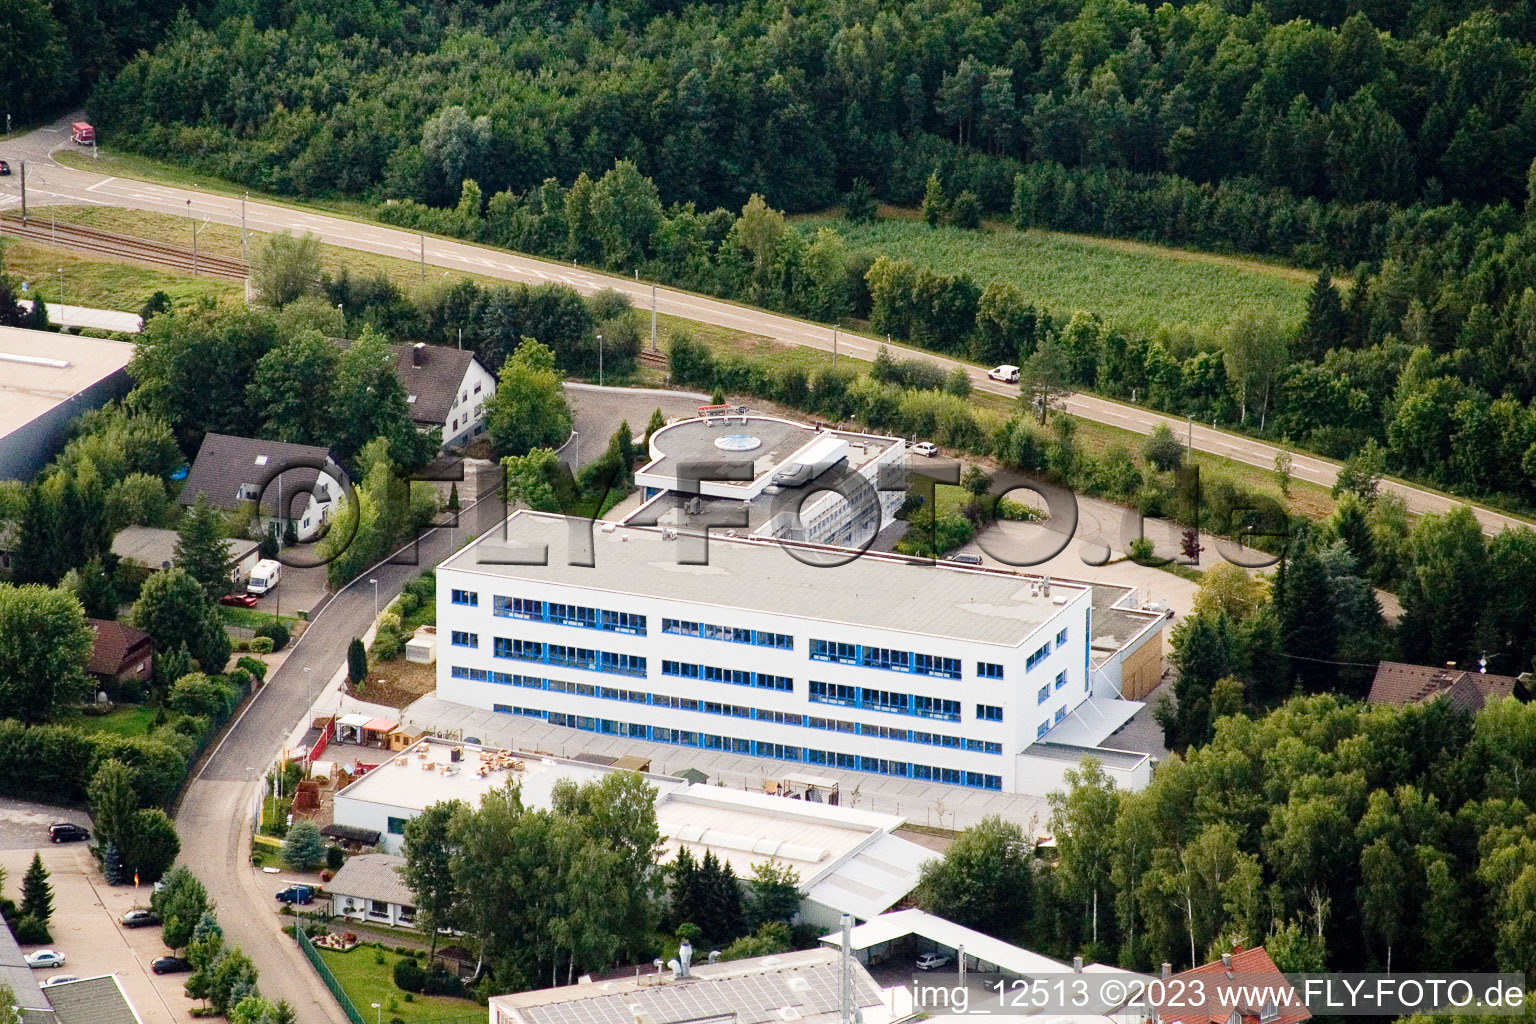 Ittersbach, zone industrielle à le quartier Im Stockmädle in Karlsbad dans le département Bade-Wurtemberg, Allemagne vu d'un drone